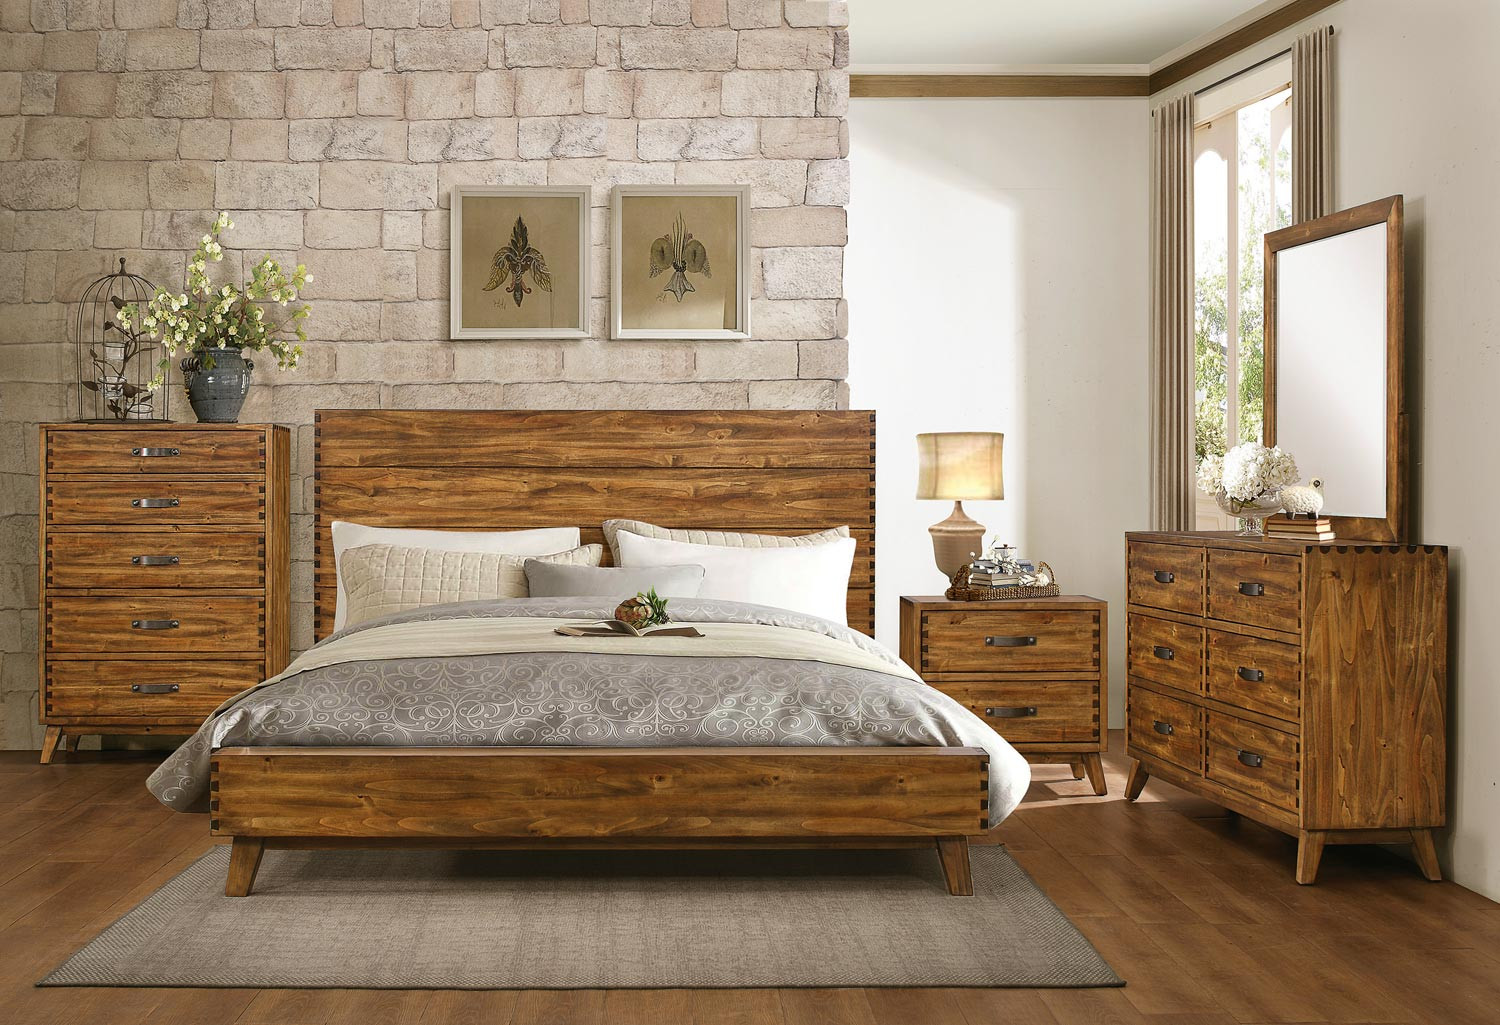 Rustic Bedroom Furniture Sets
 Homelegance Sorrel Panel Platform Bedroom Set Rustic